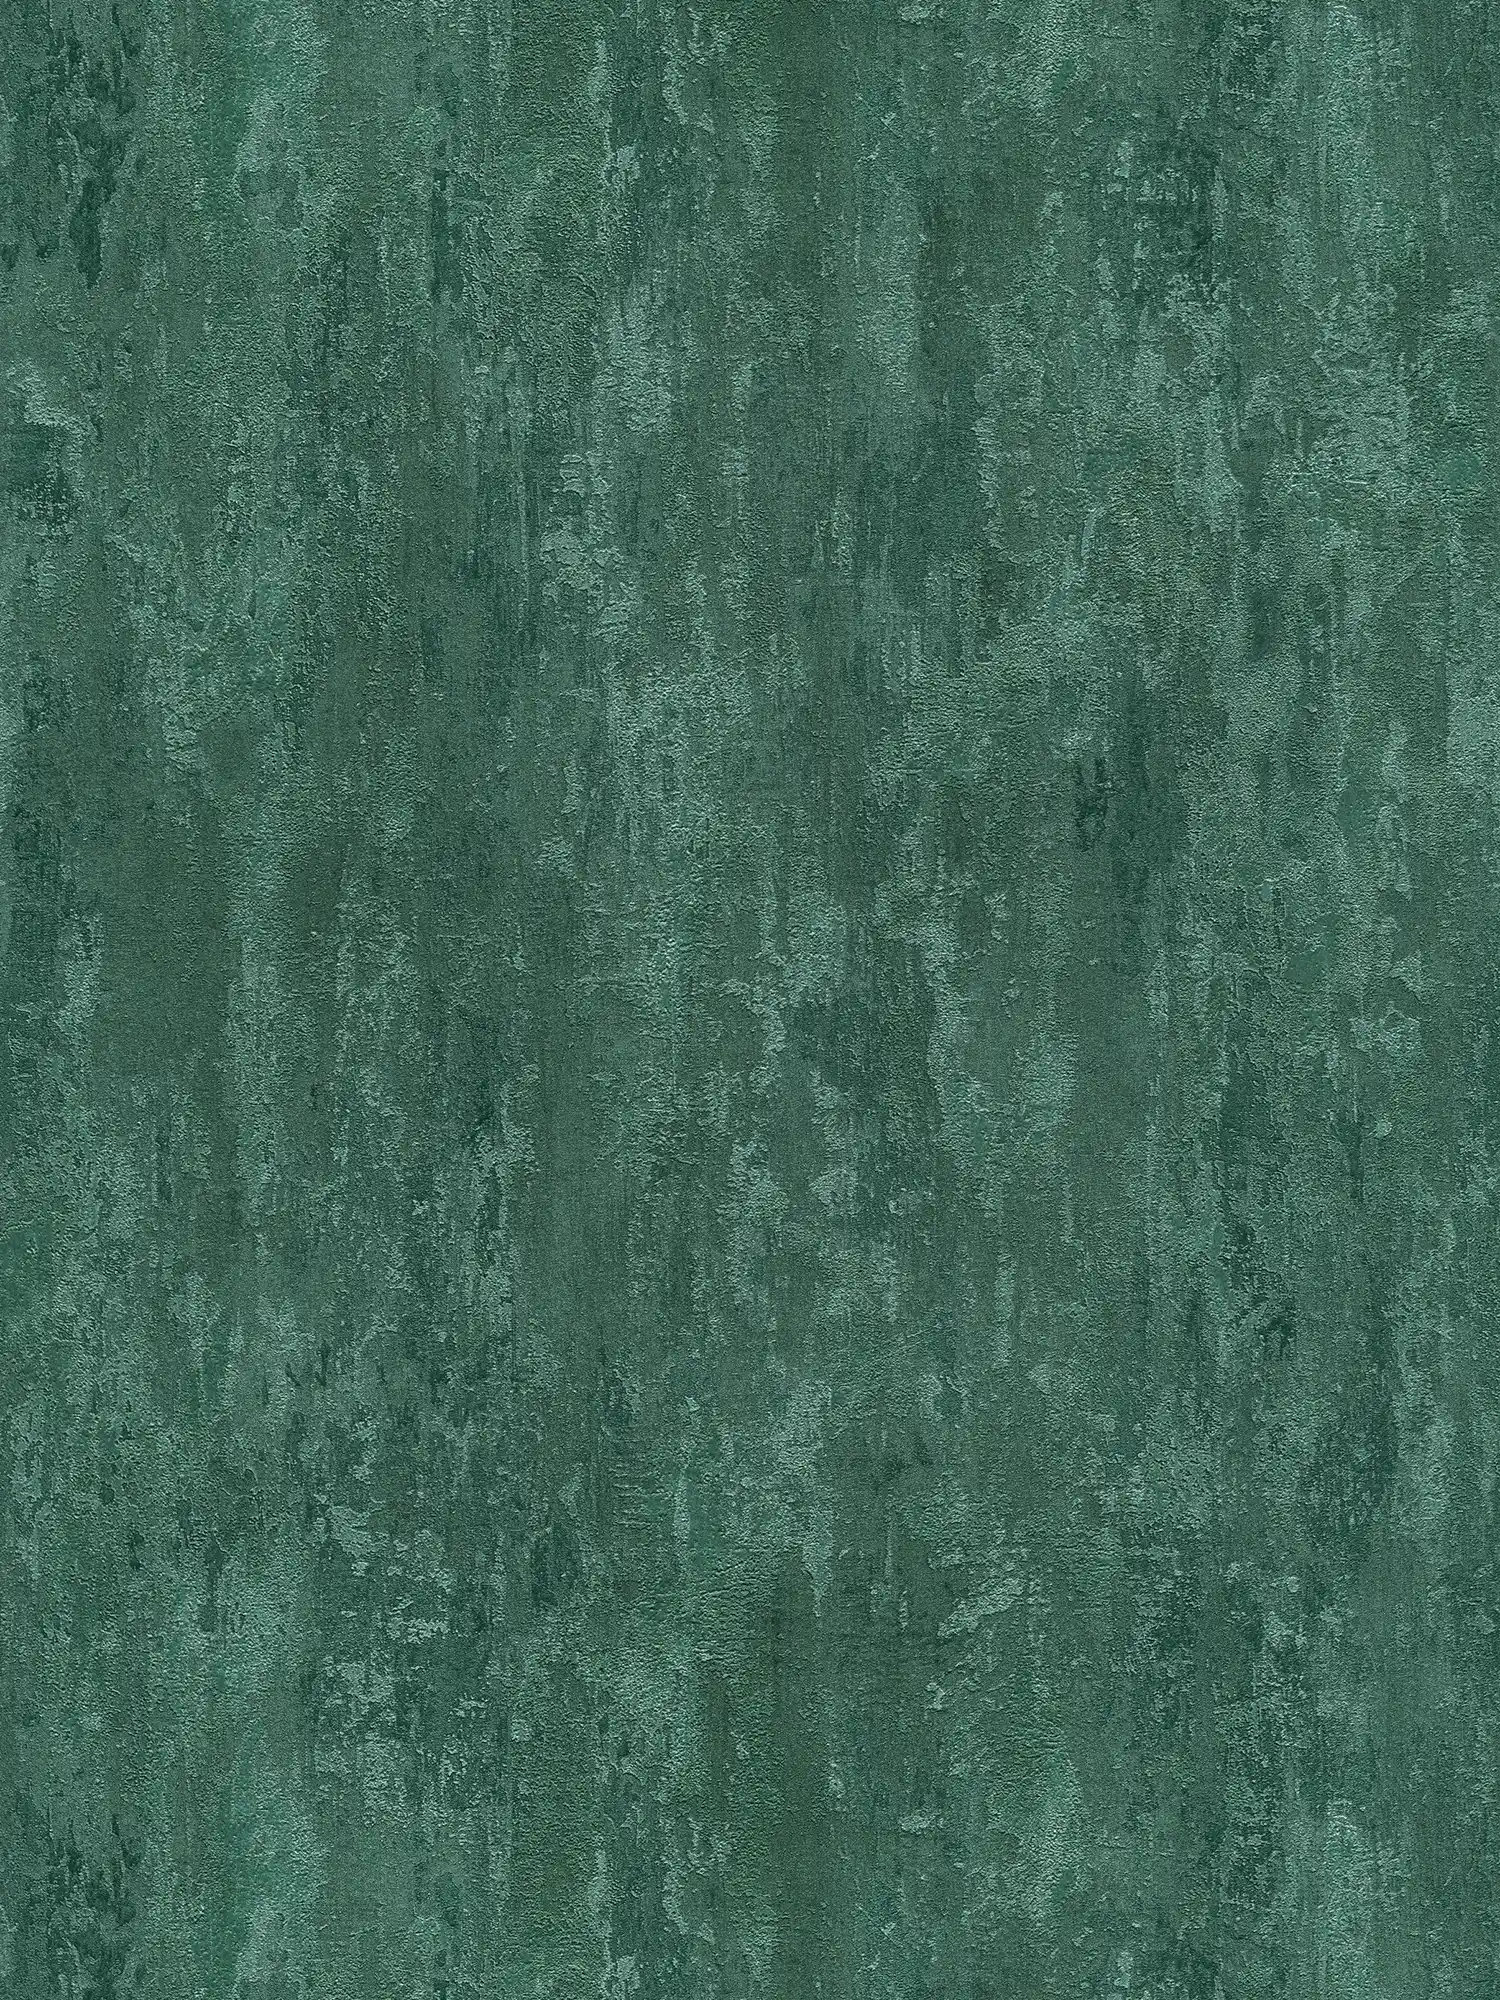         carta da parati in stile industriale con effetto texture - verde, metallizzata
    